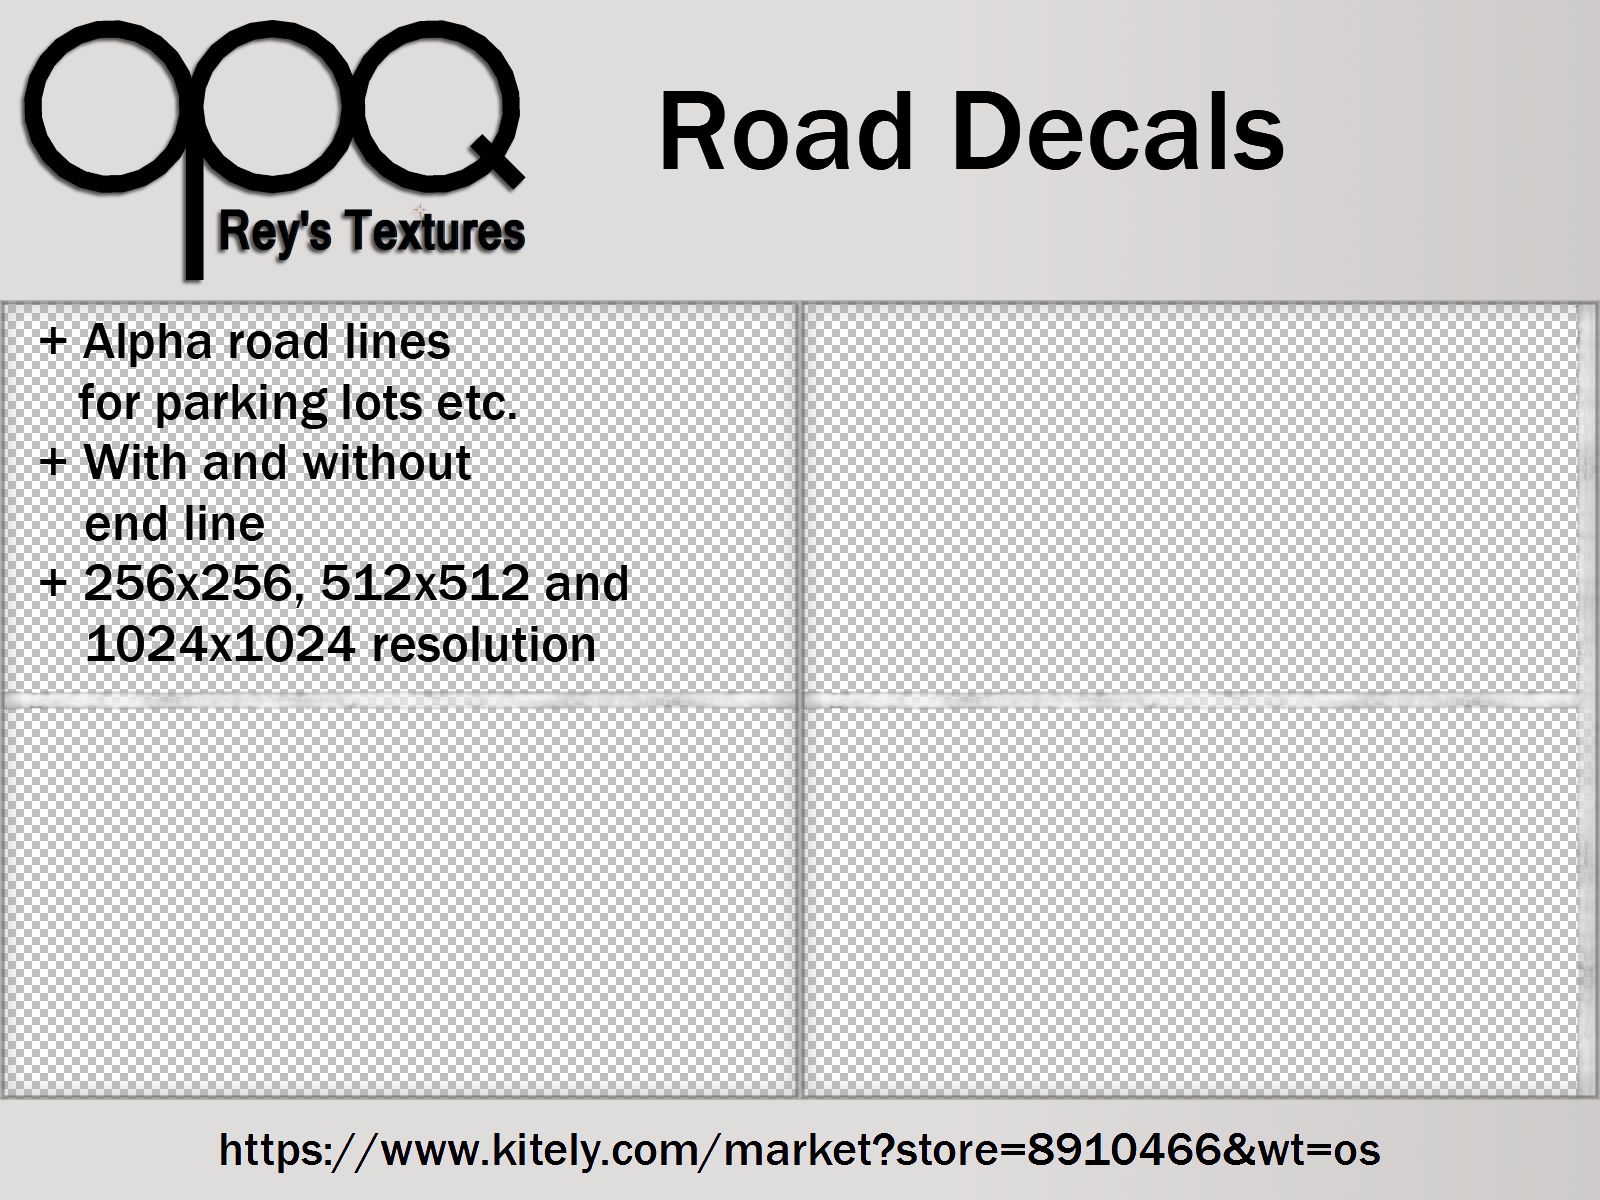 Rey's Road Decals Poster KM.jpg